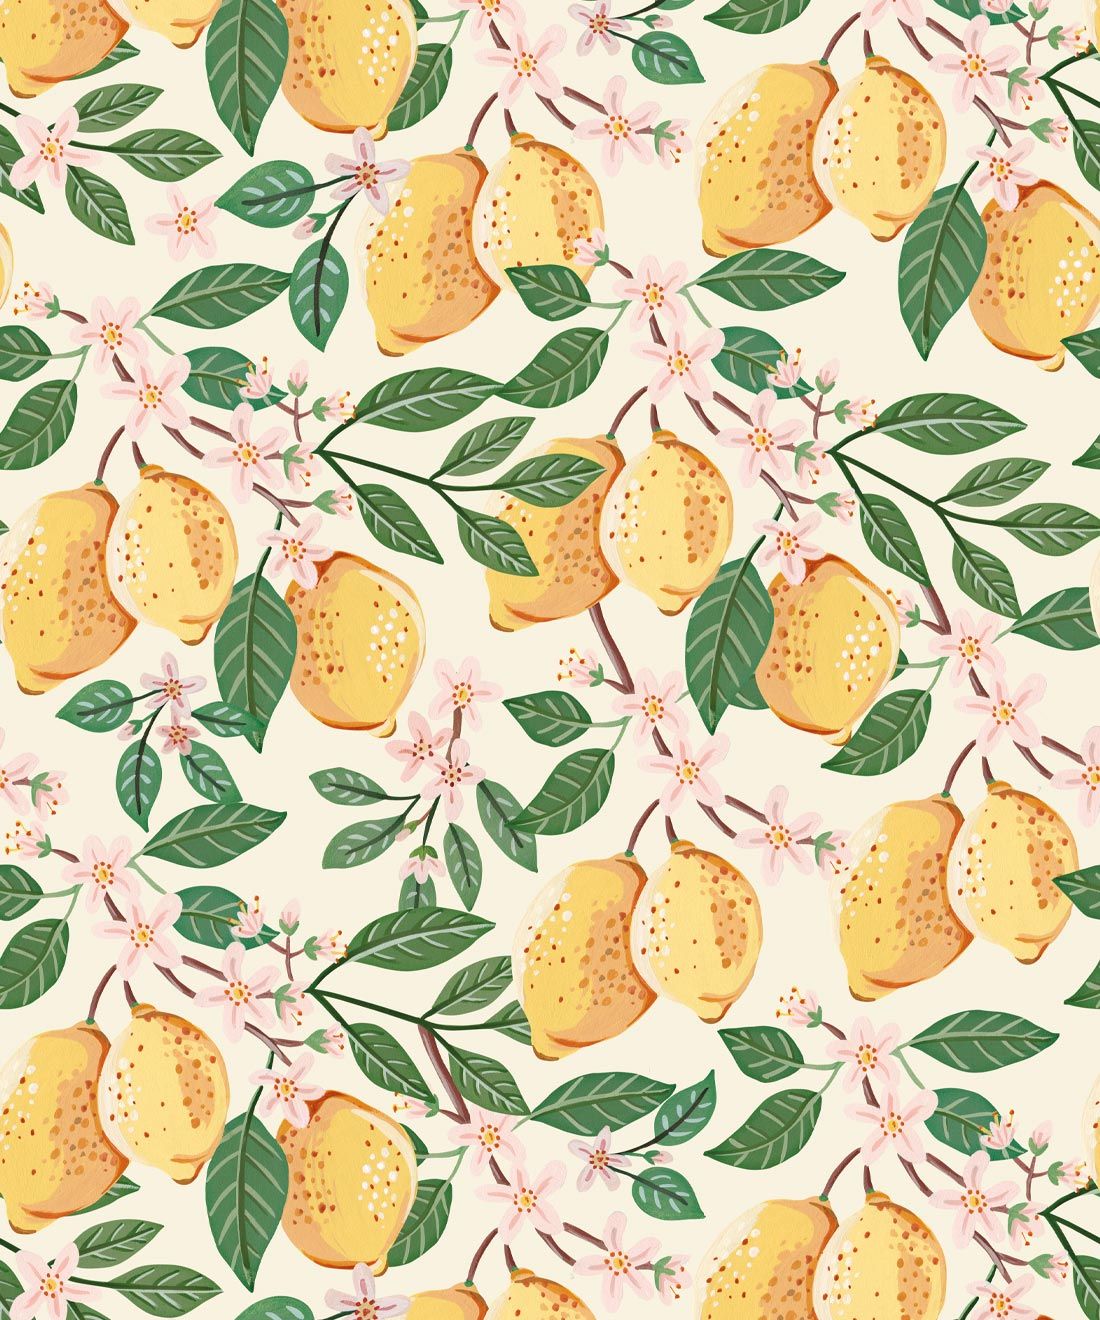 Lemons Wallpaper • Linen • Swatch